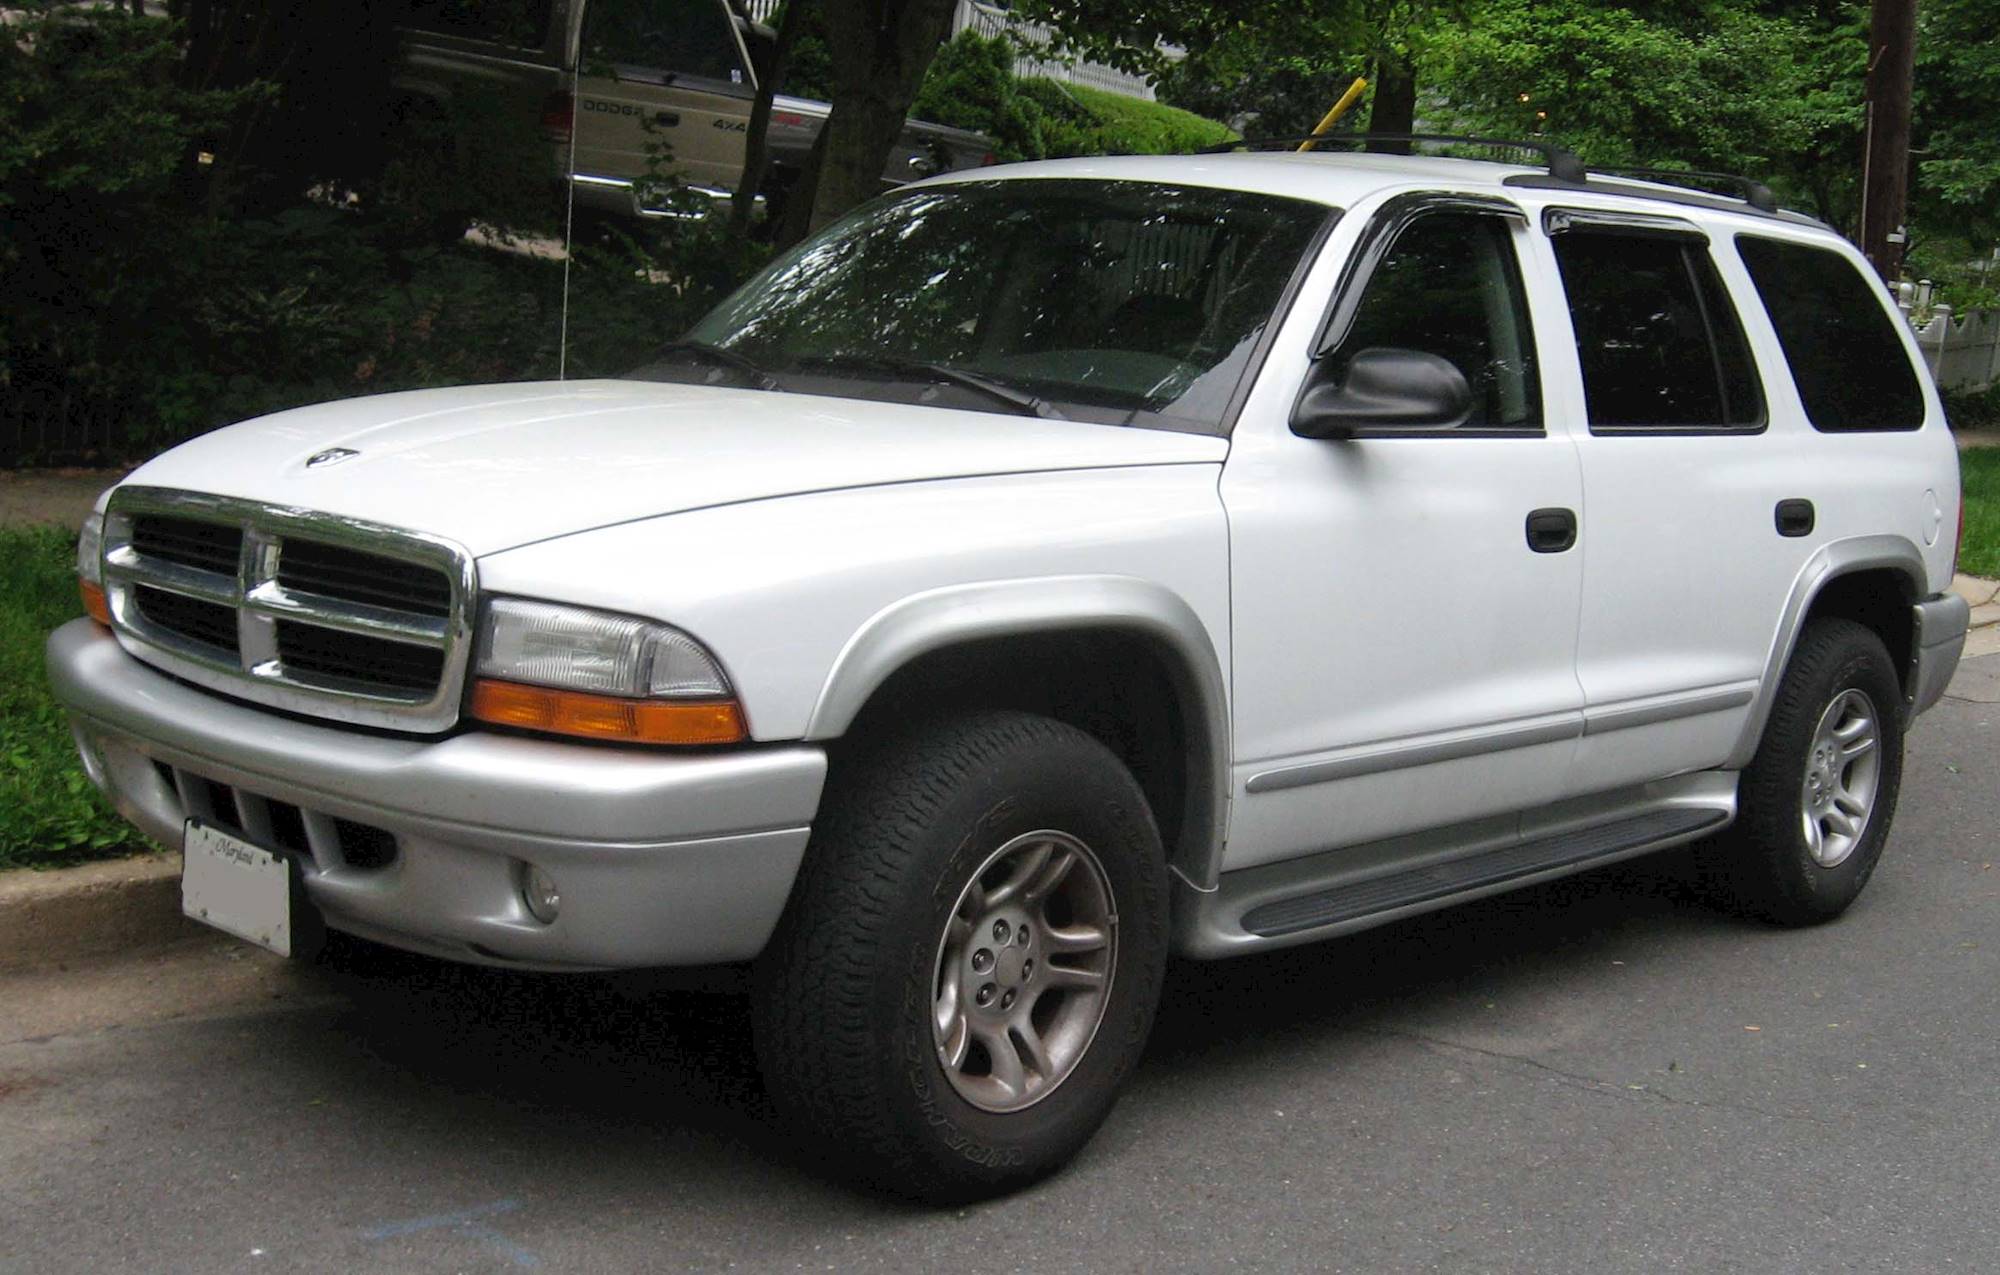 1998 Dodge Durango Base - 4dr SUV 3.9L V6 4x4 auto